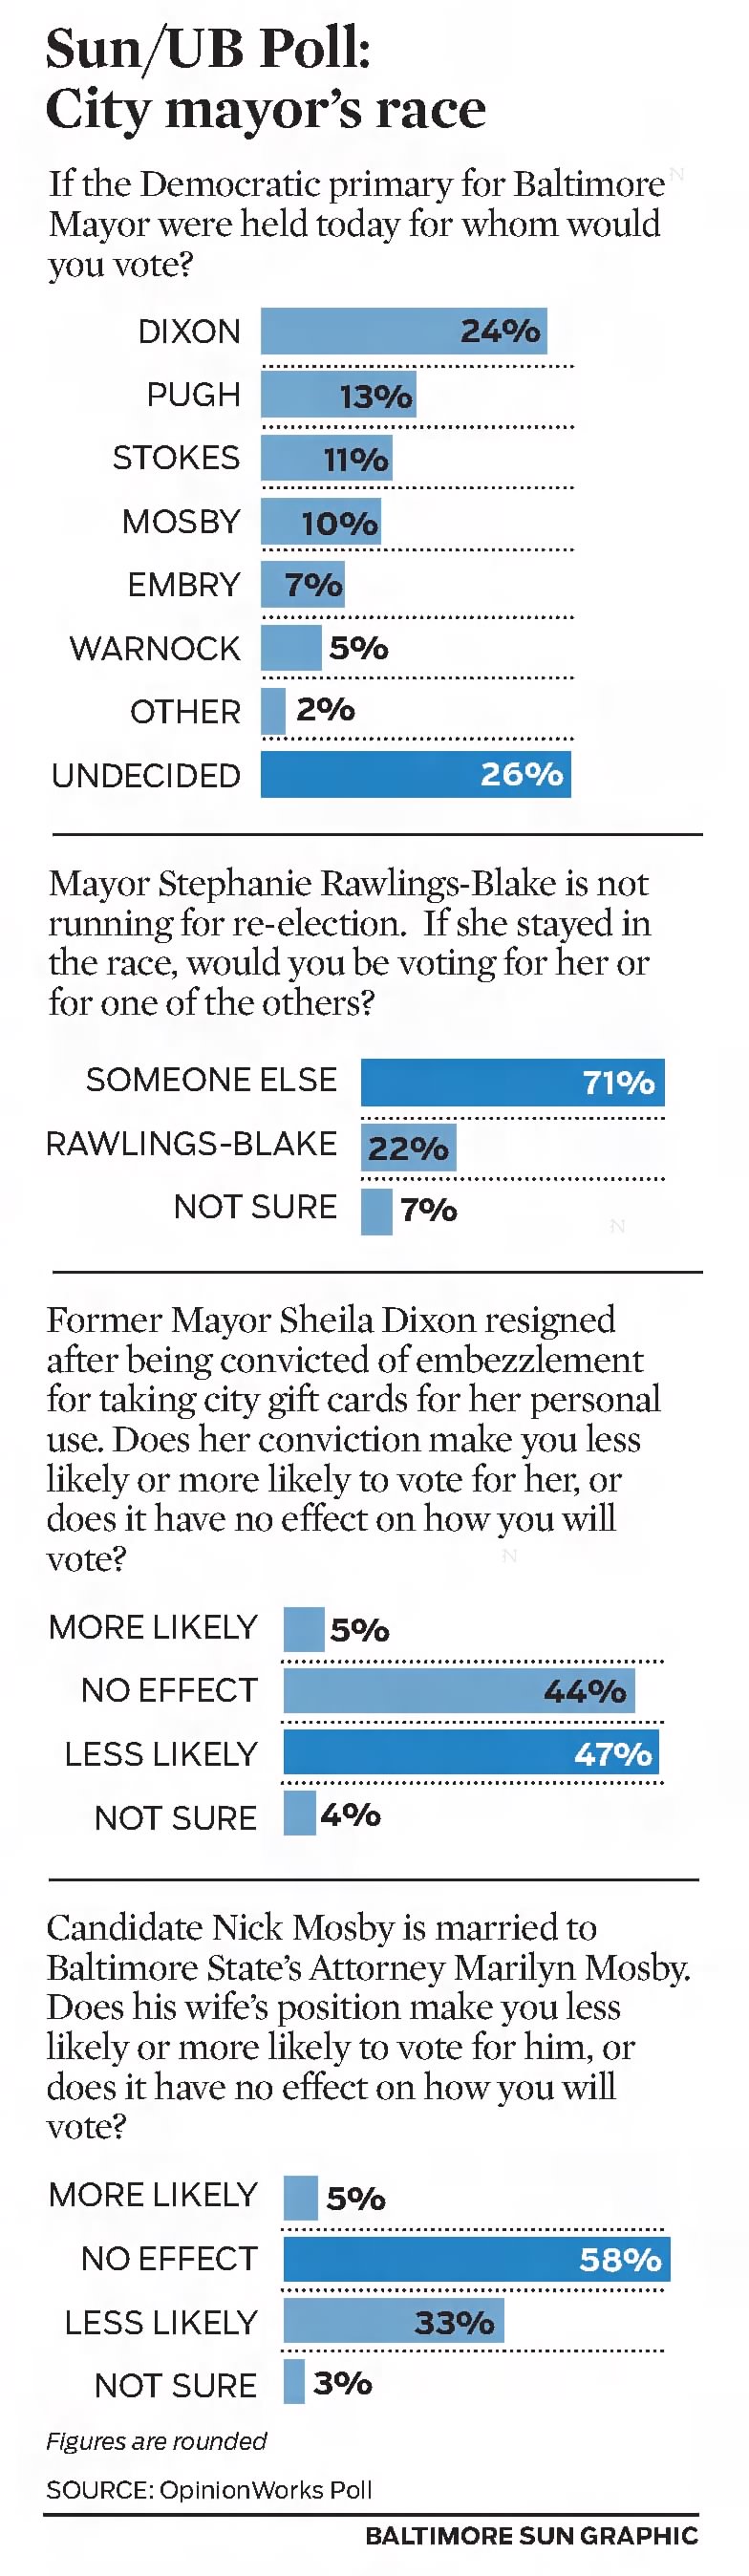 Sun / UB Poll: City mayor's race